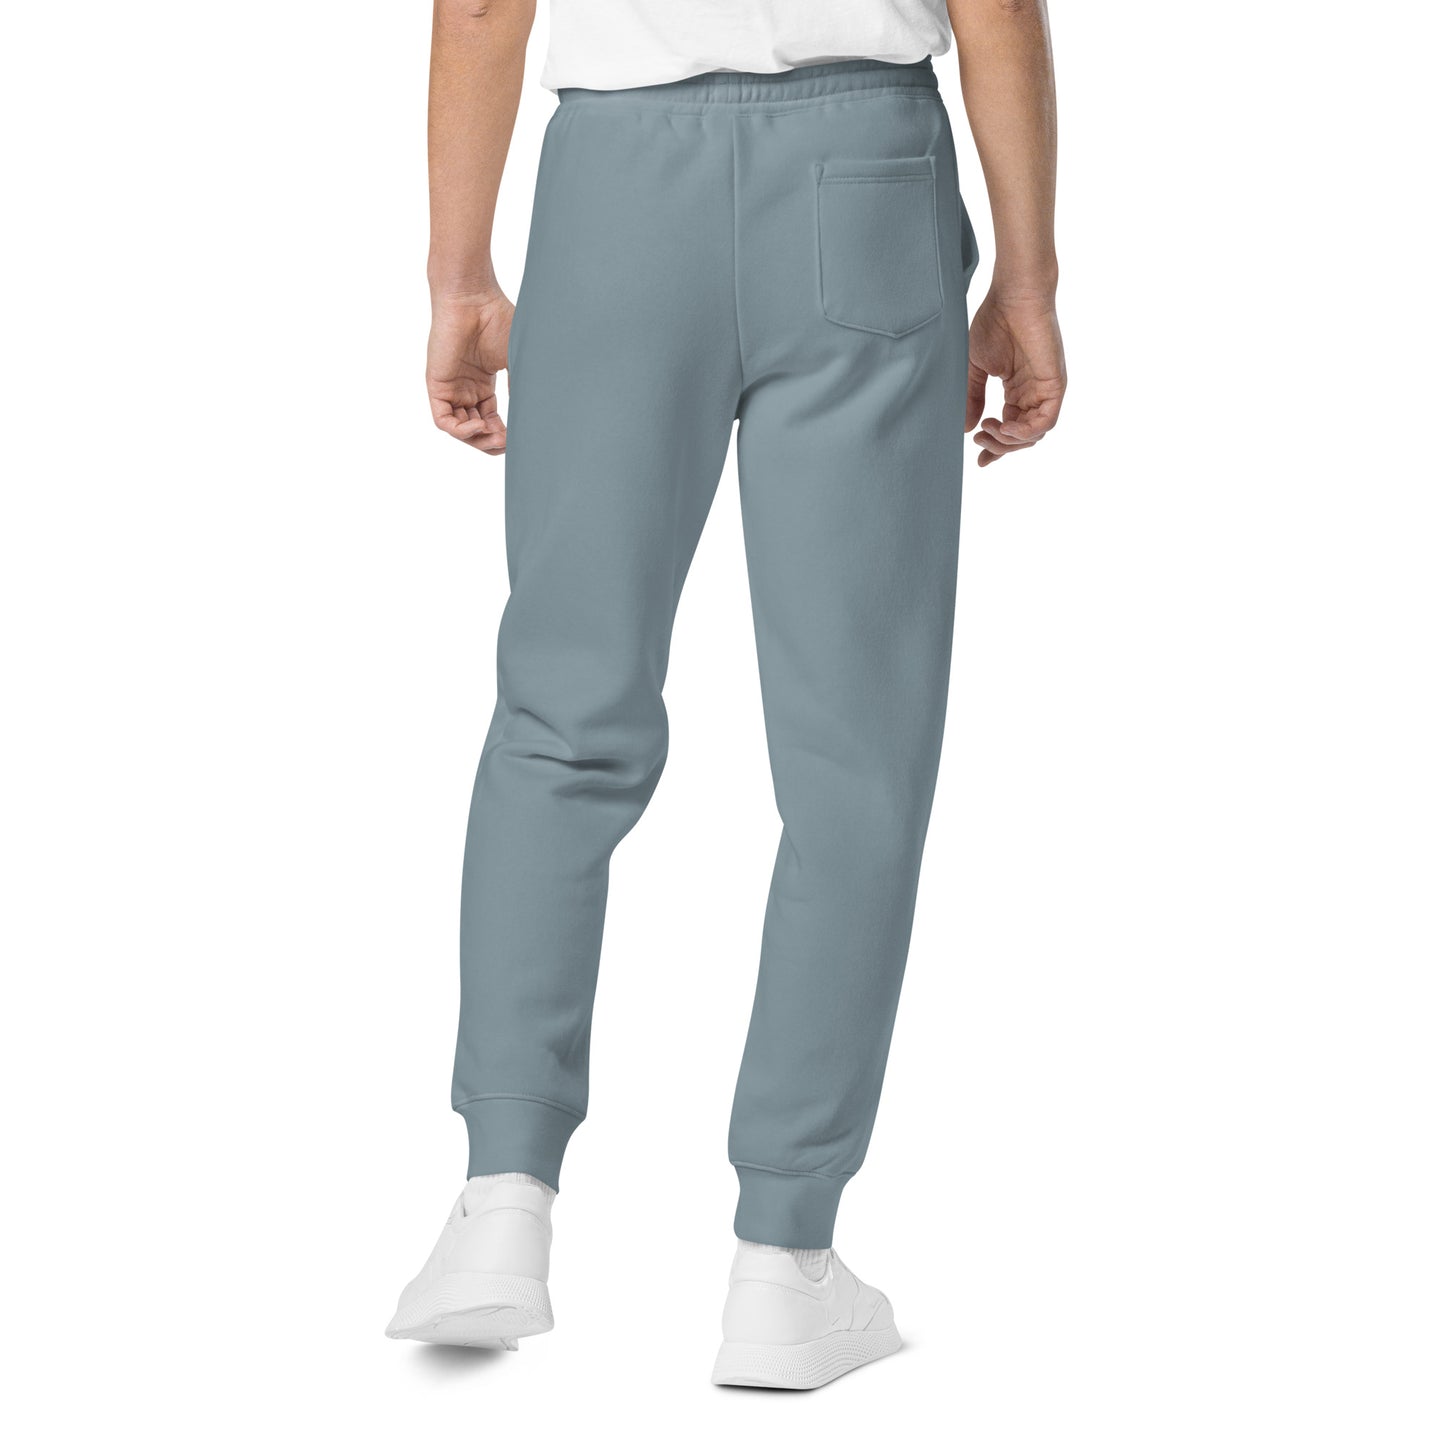 ZLB Unisex Pigment-Dyed Sweatpants